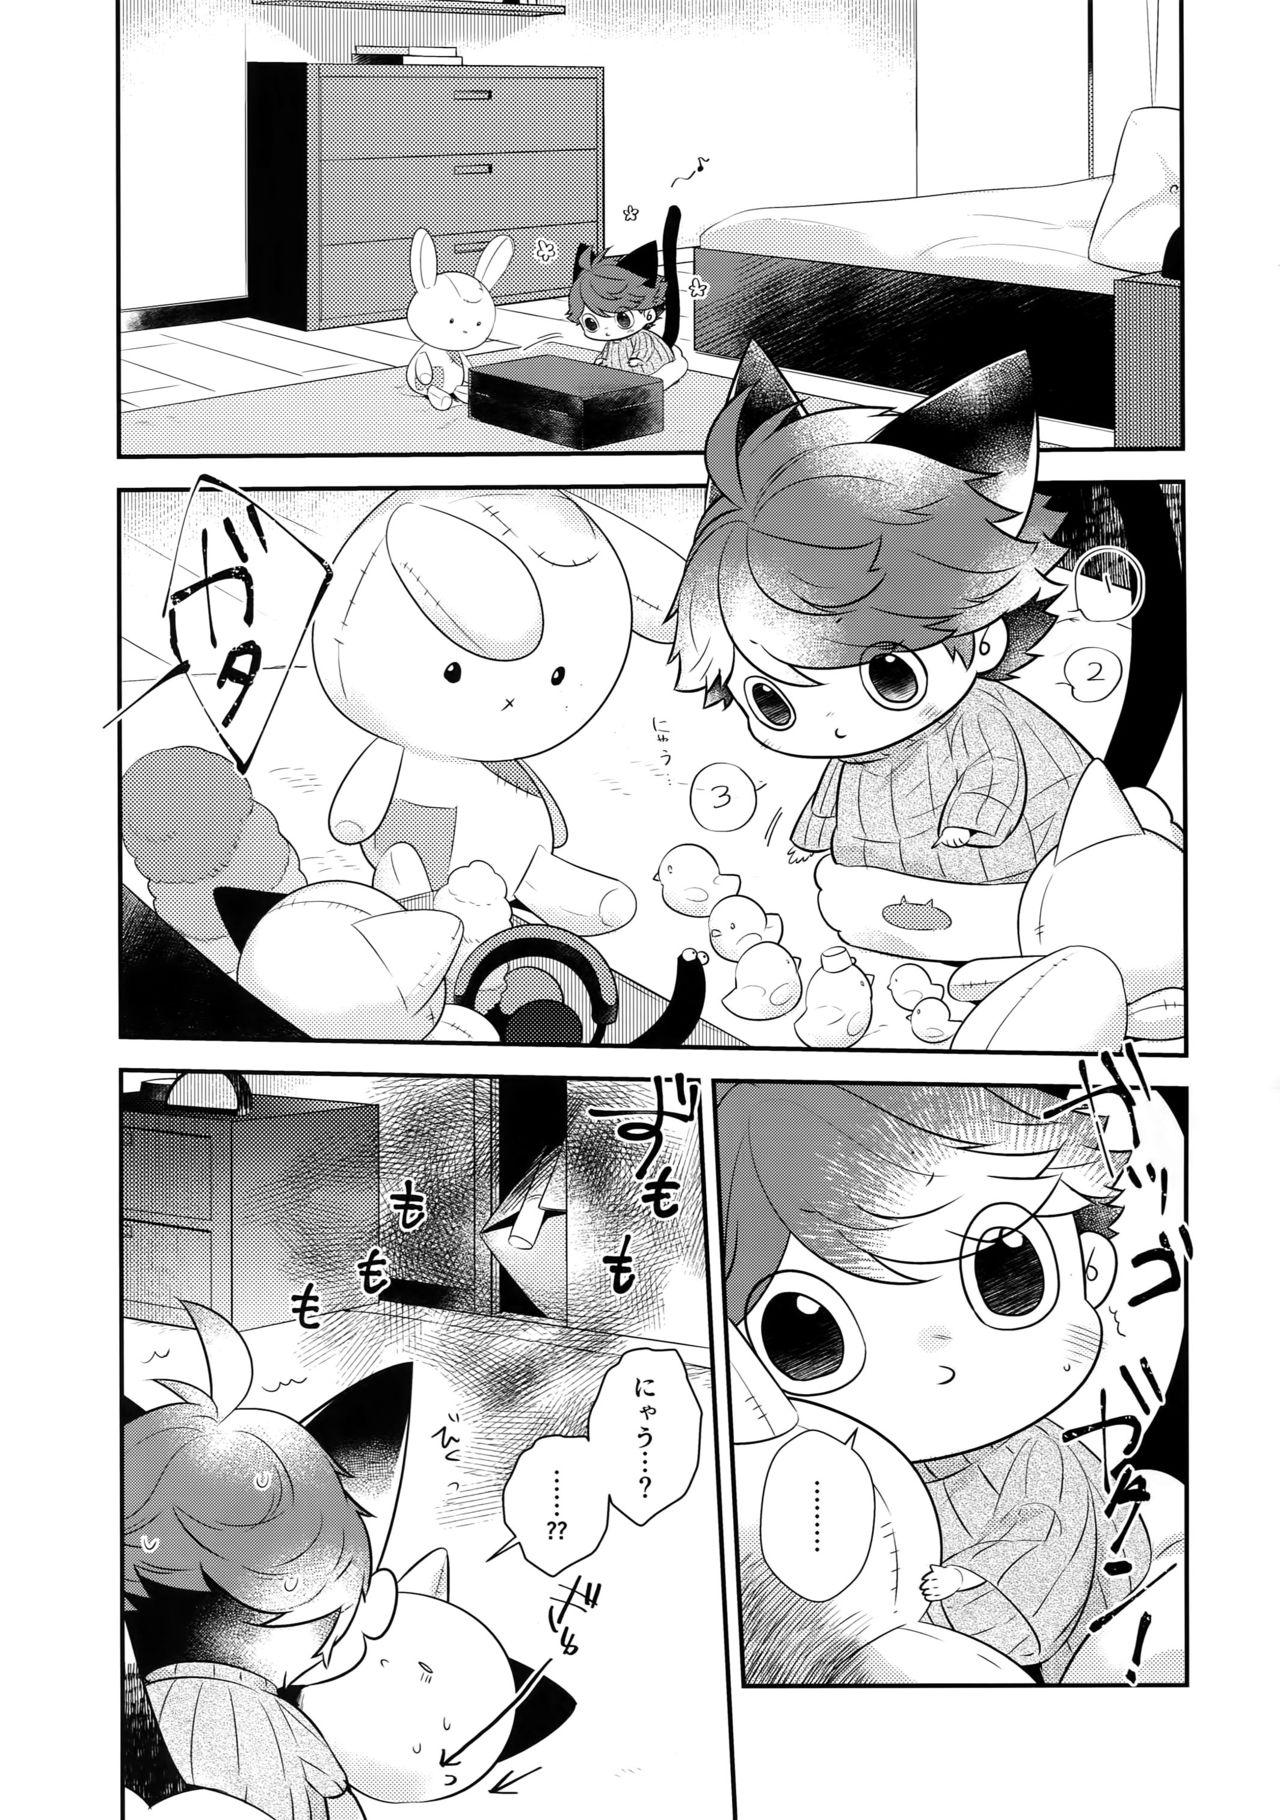 Dirty Iwachan no Neko ni Naritai 7 - Haikyuu Tites - Page 4